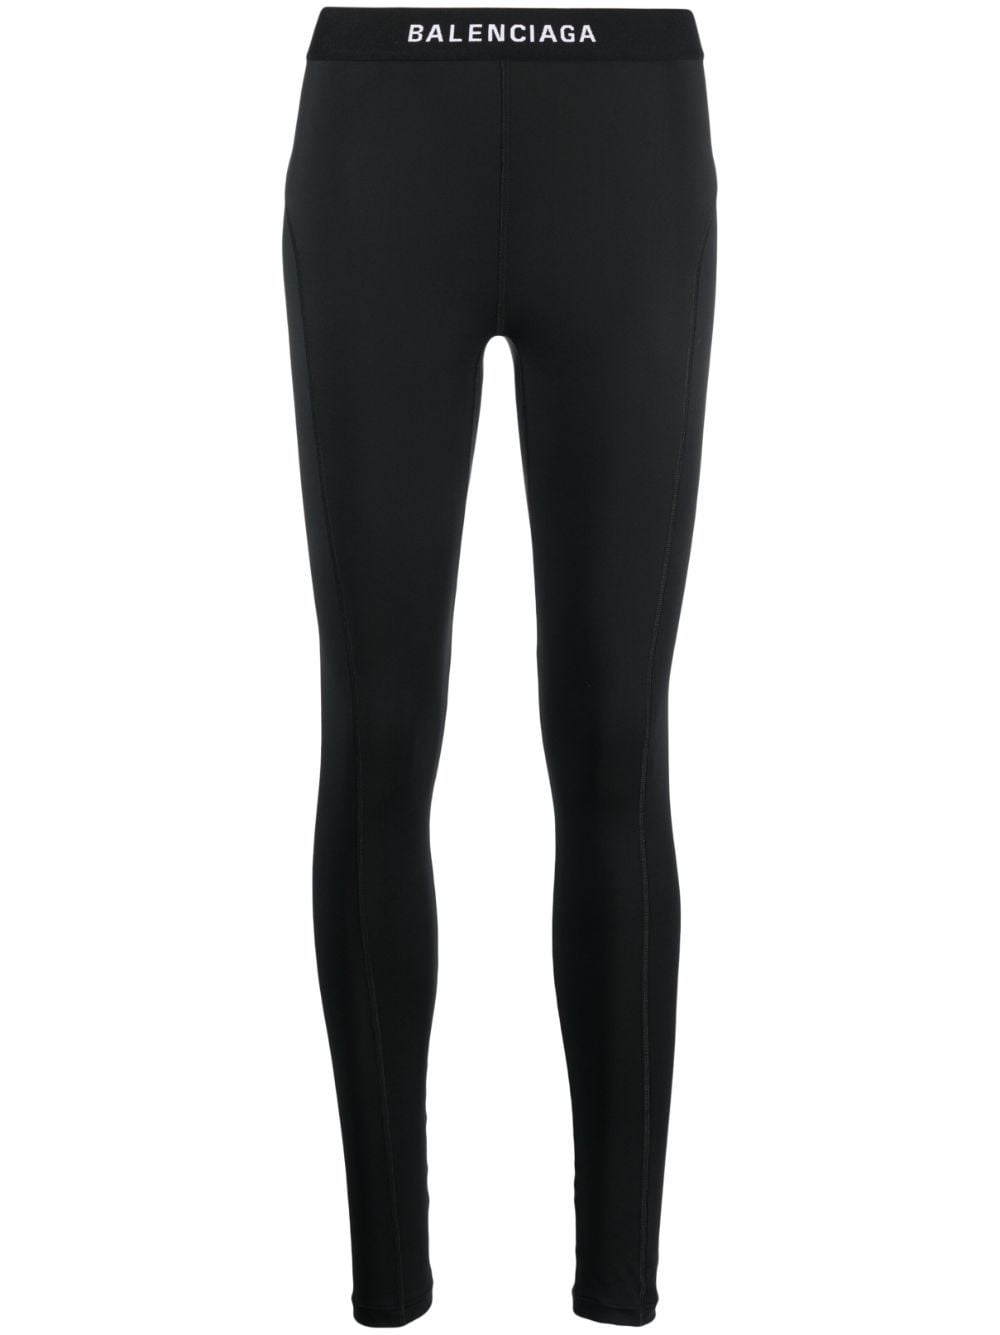 Balenciaga logo-waistband leggings